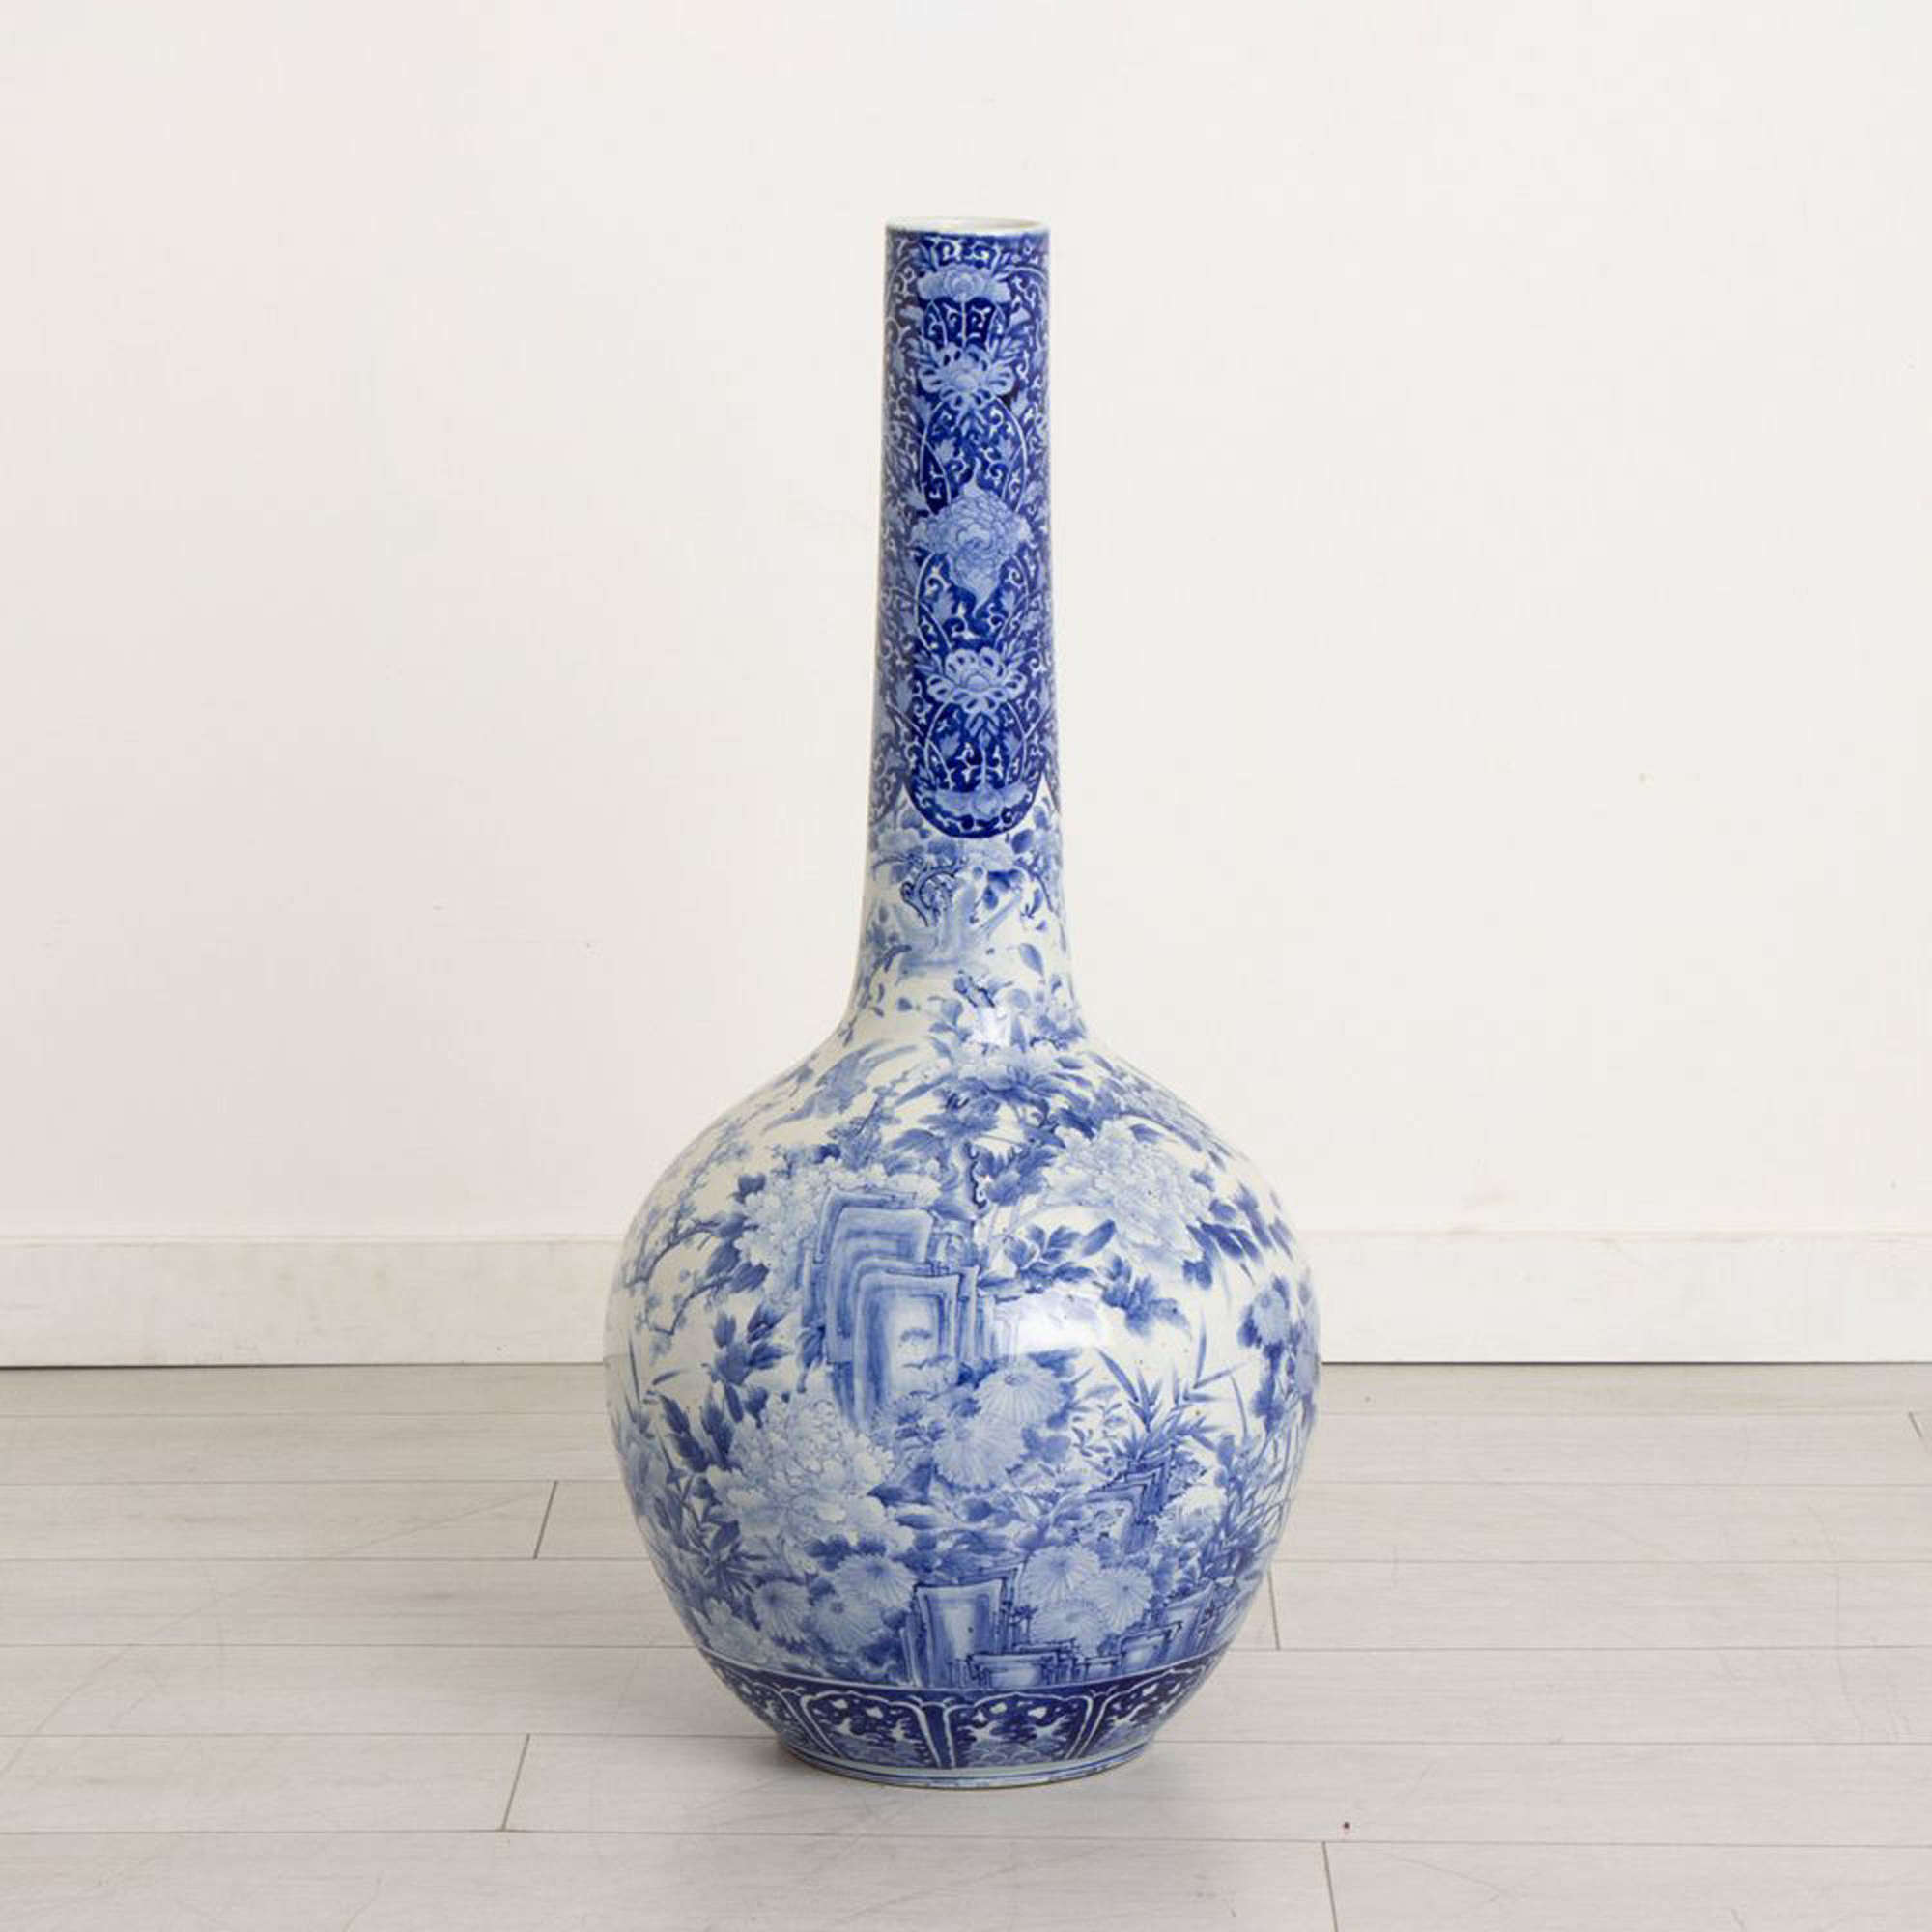 Japanese Meiji Period (1868-1889) Rare Large Tianqiuping vase